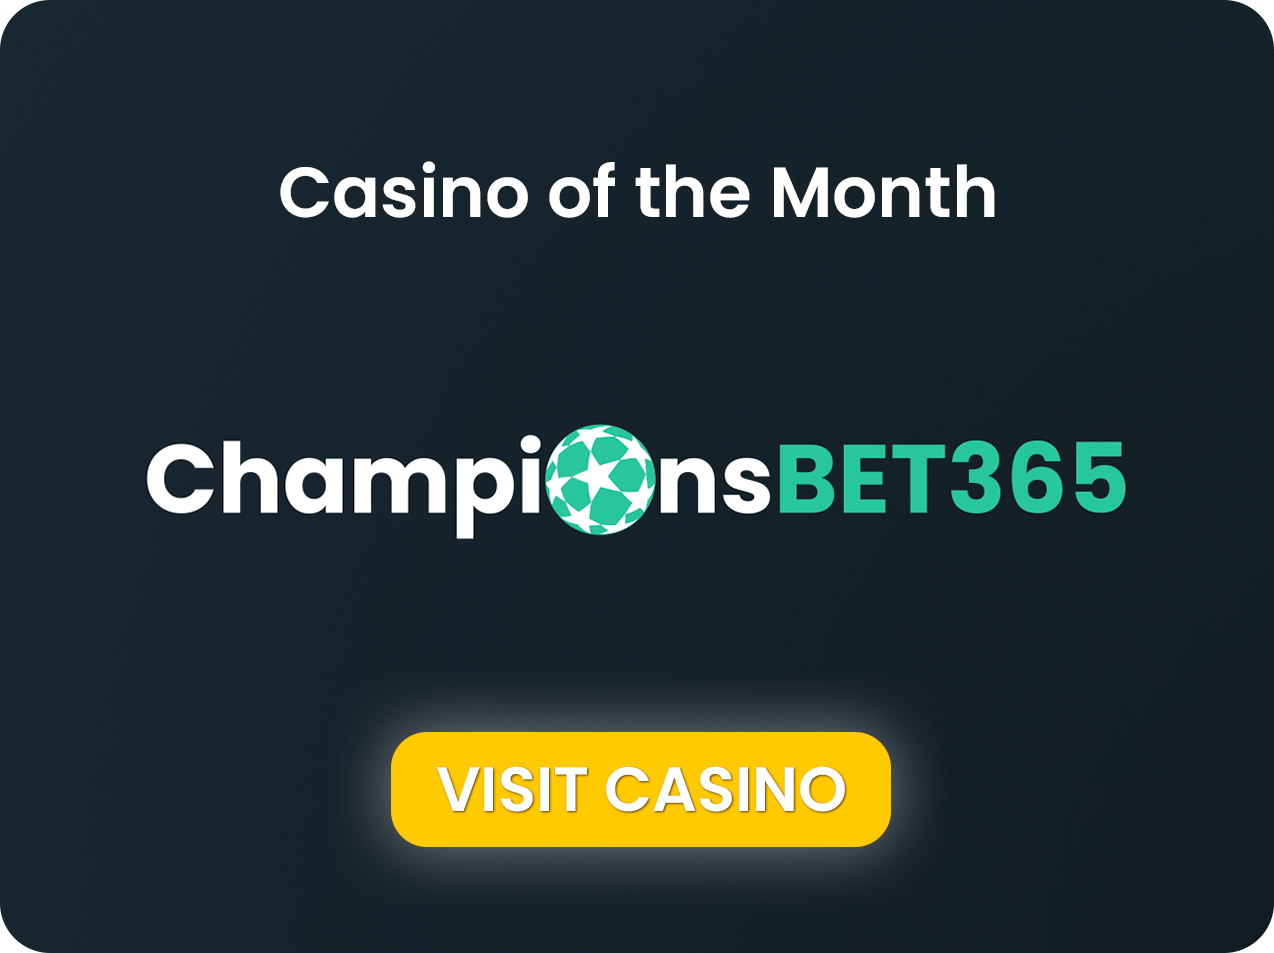 Championsbet365 Casino van de maand